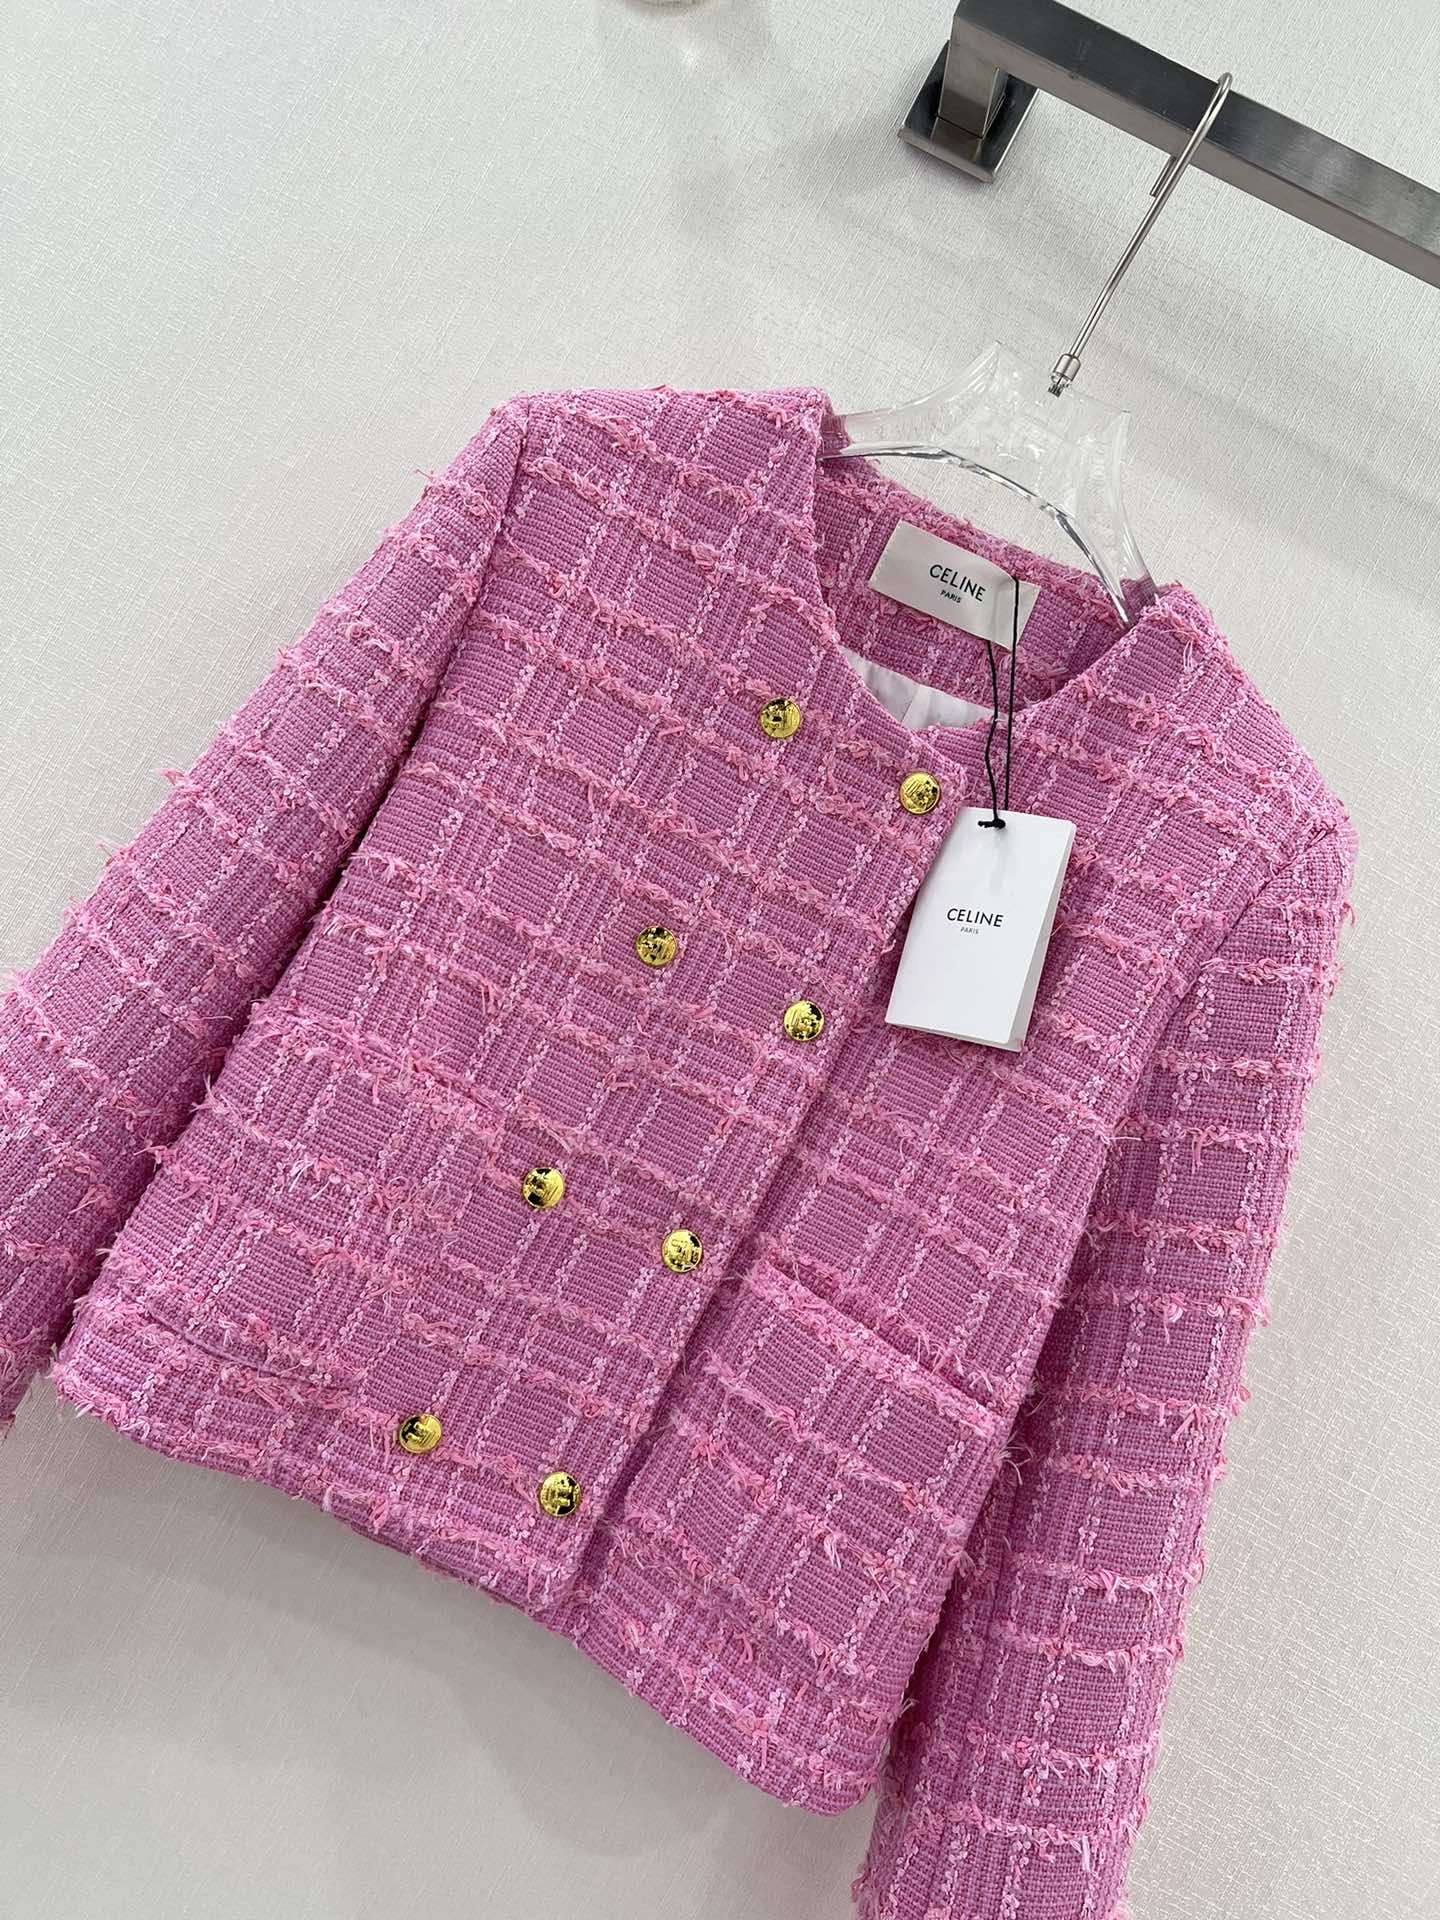 新品 セリーヌ メンズ アウターｎ級品 純綿アウター 柔らかくて暖かい ファッション ピンク_2